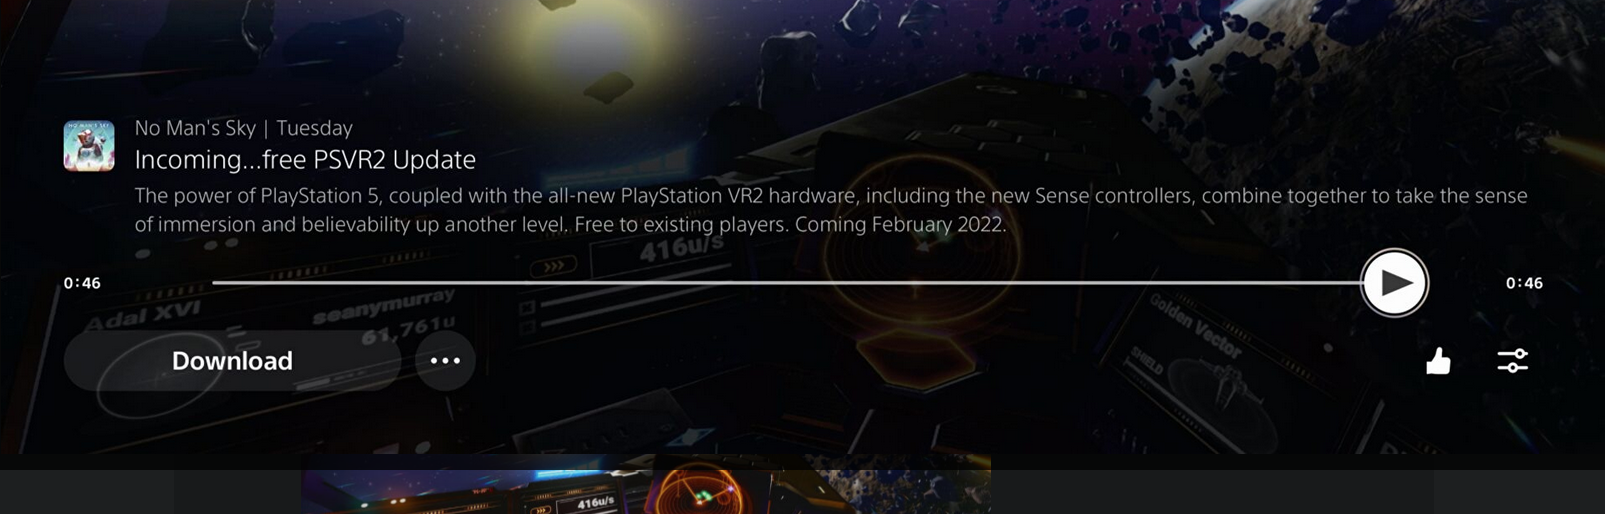 《無人深空》免費PSVR 2更新將於明年硬體首發同步推出